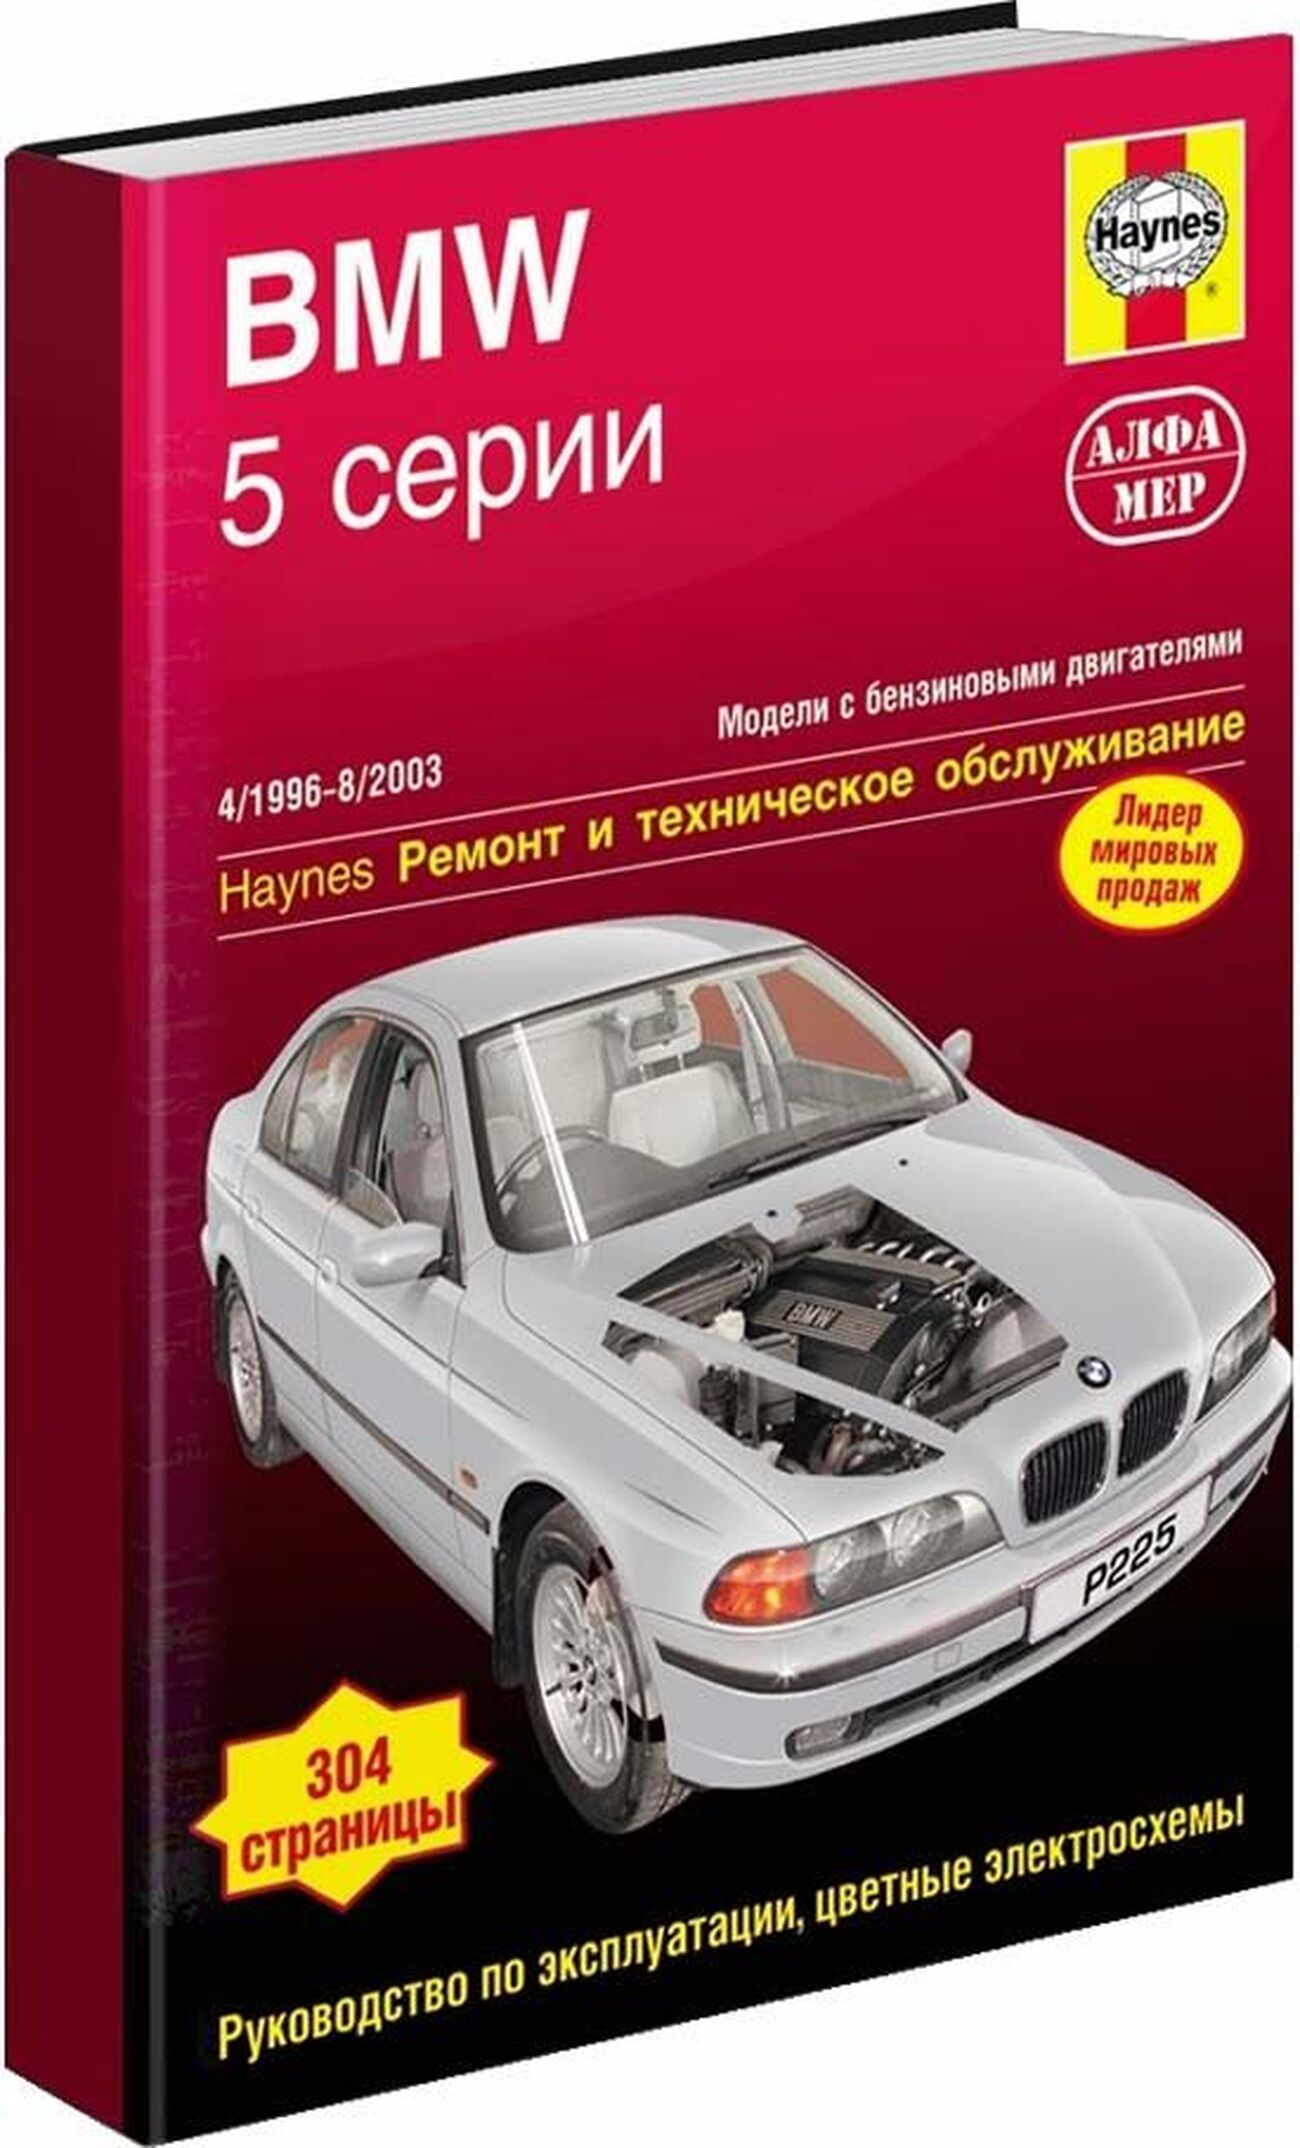 Книга: BMW 5 серии Е39 (б) 1996-2003 г.в., рем., экспл., то | Алфамер Паблишинг